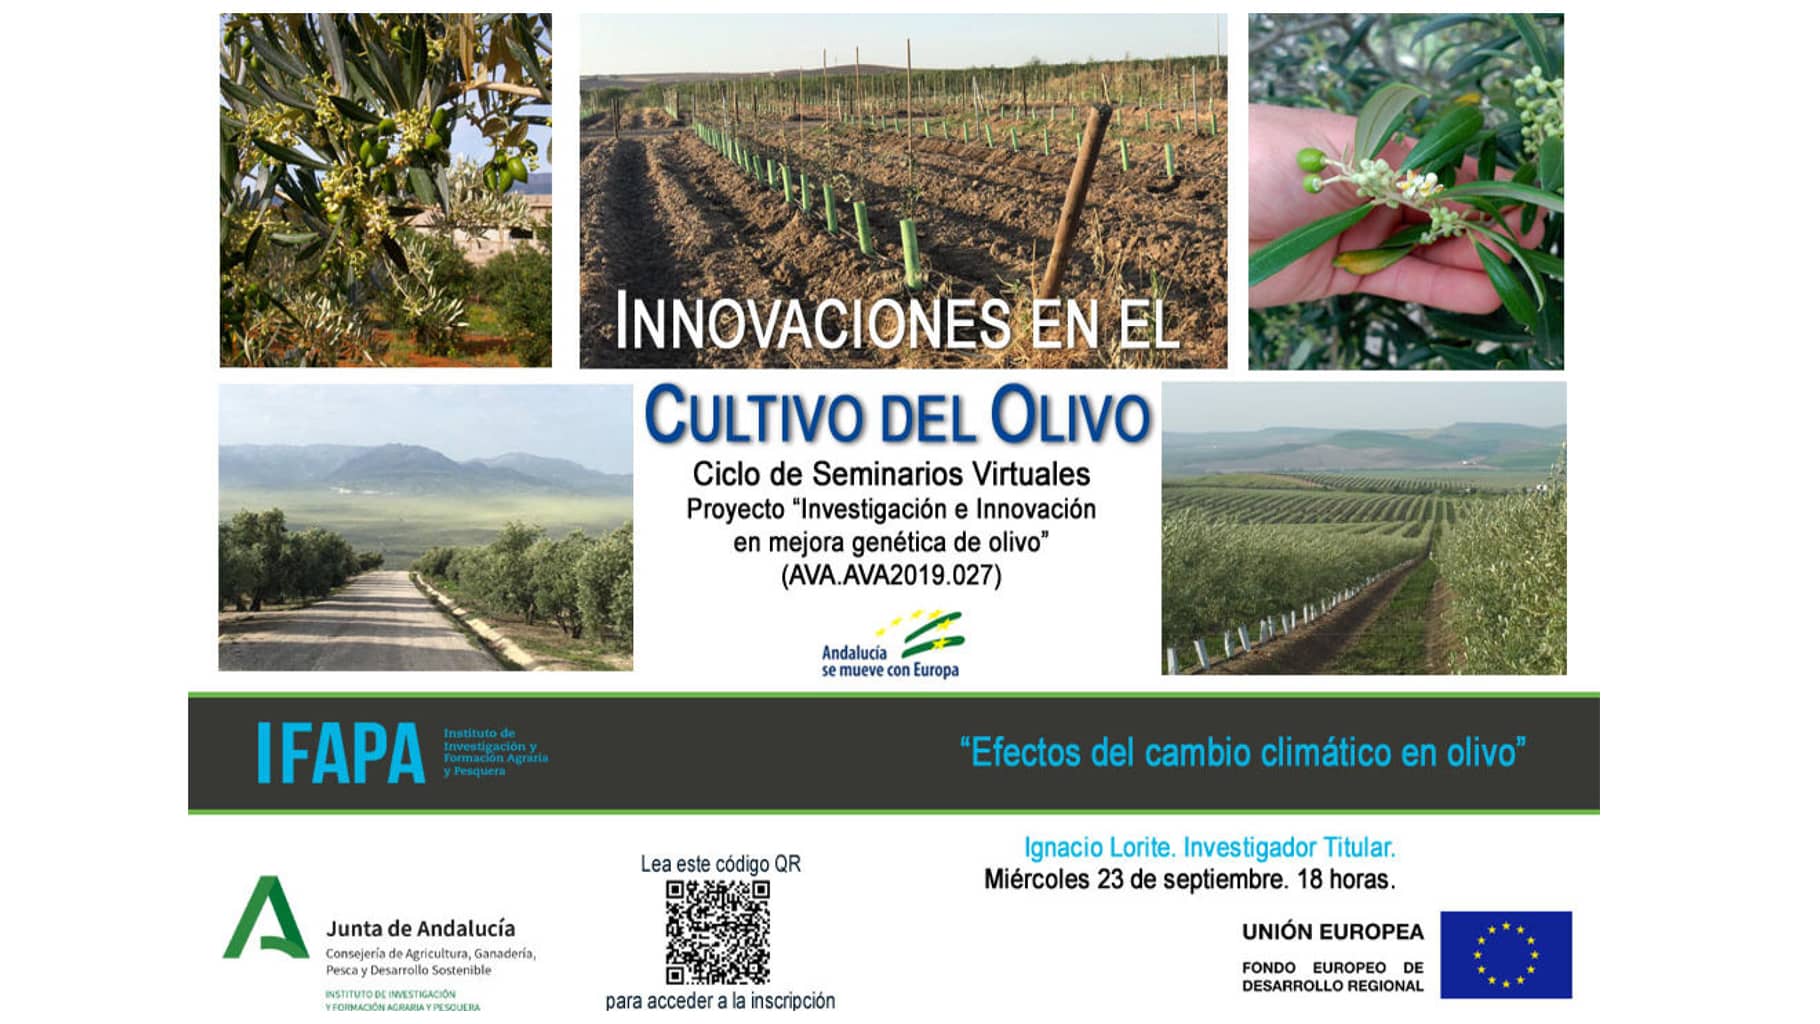 Efectos del cambio climático en olivo. Segunda jornada dedicada al proyecto “Investigación e innovación en mejora genética de olivo”